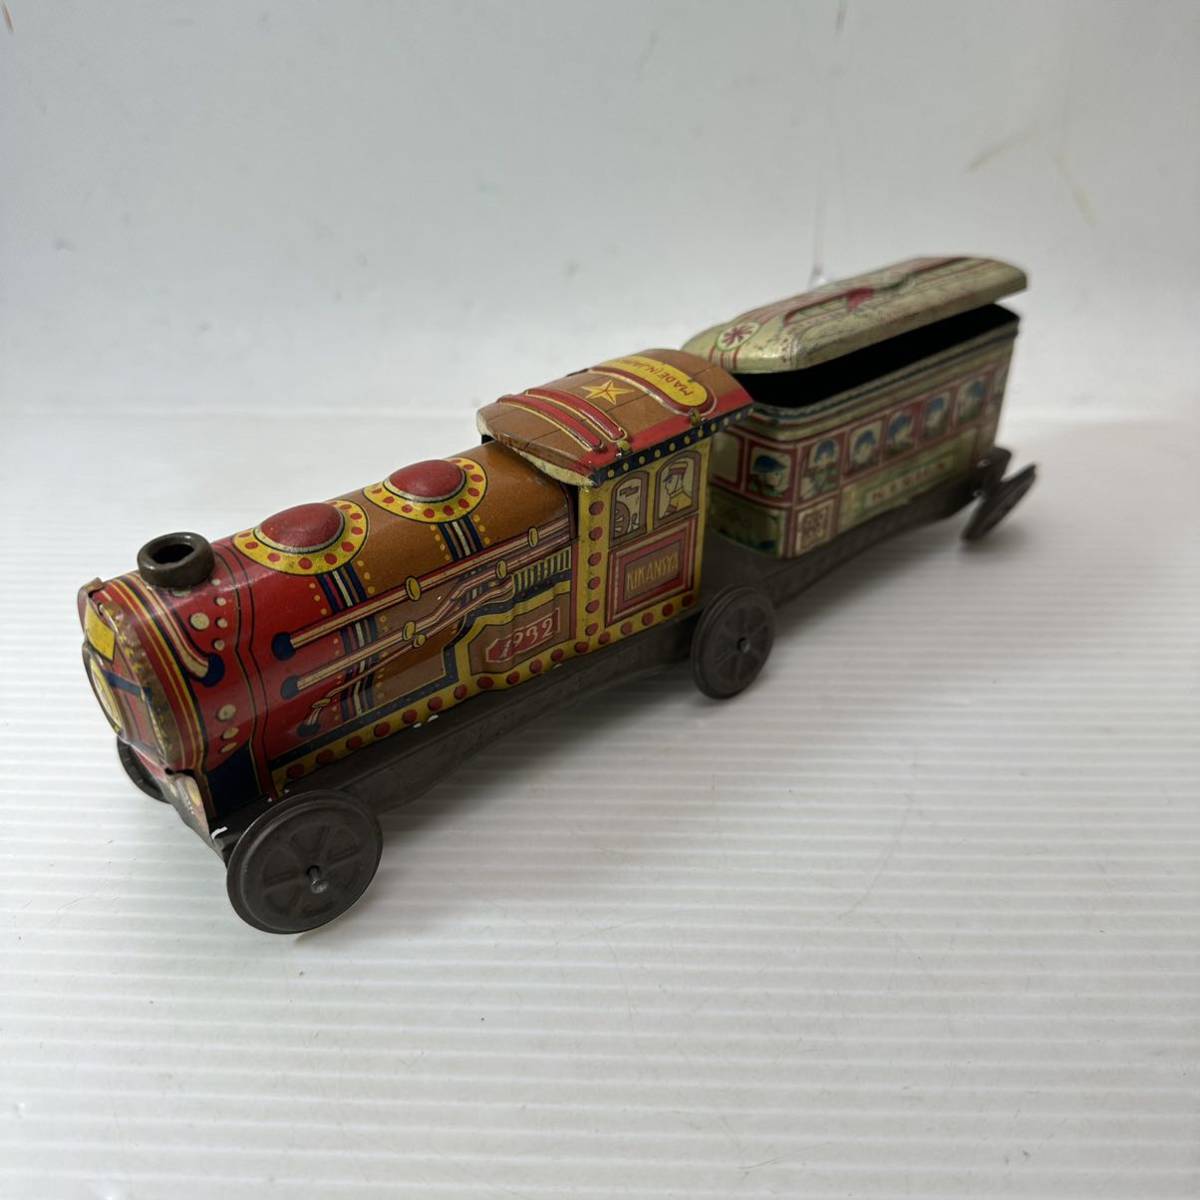 ブリキ製 おもちゃ 汽車 機関車 列車 1932 旧日本軍 兵隊 日本製 レトロ ビンテージ 戦前 戦中 戦後 当時物 古道具 古玩具